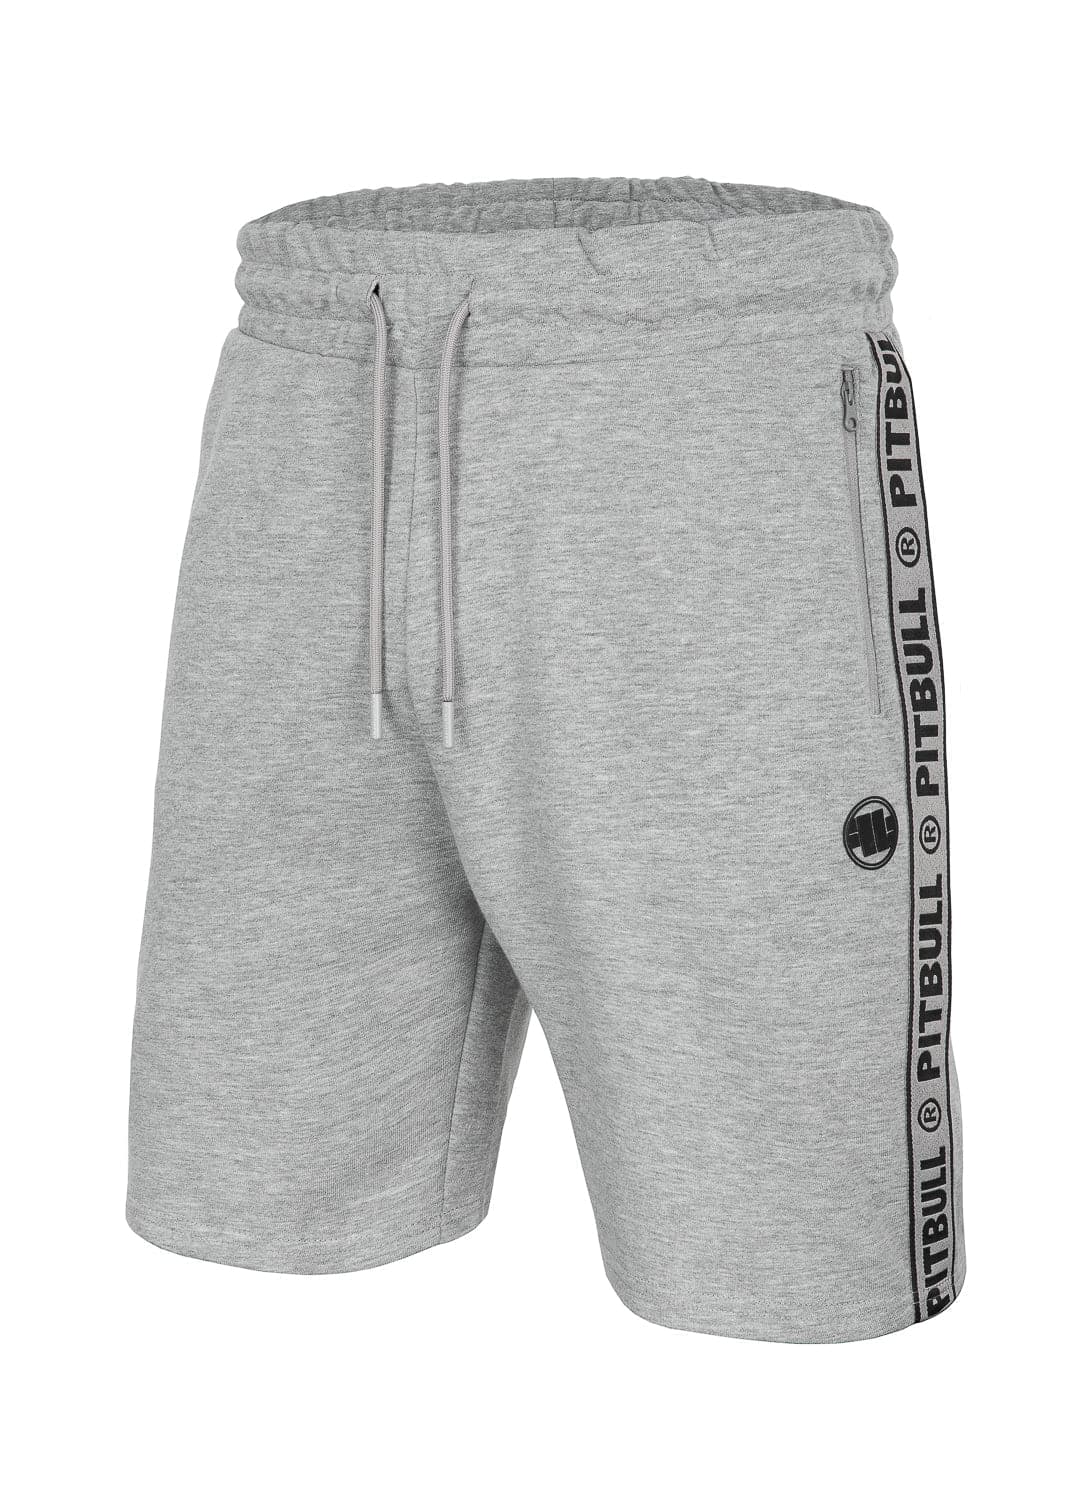 MERIDAN Grey Shorts